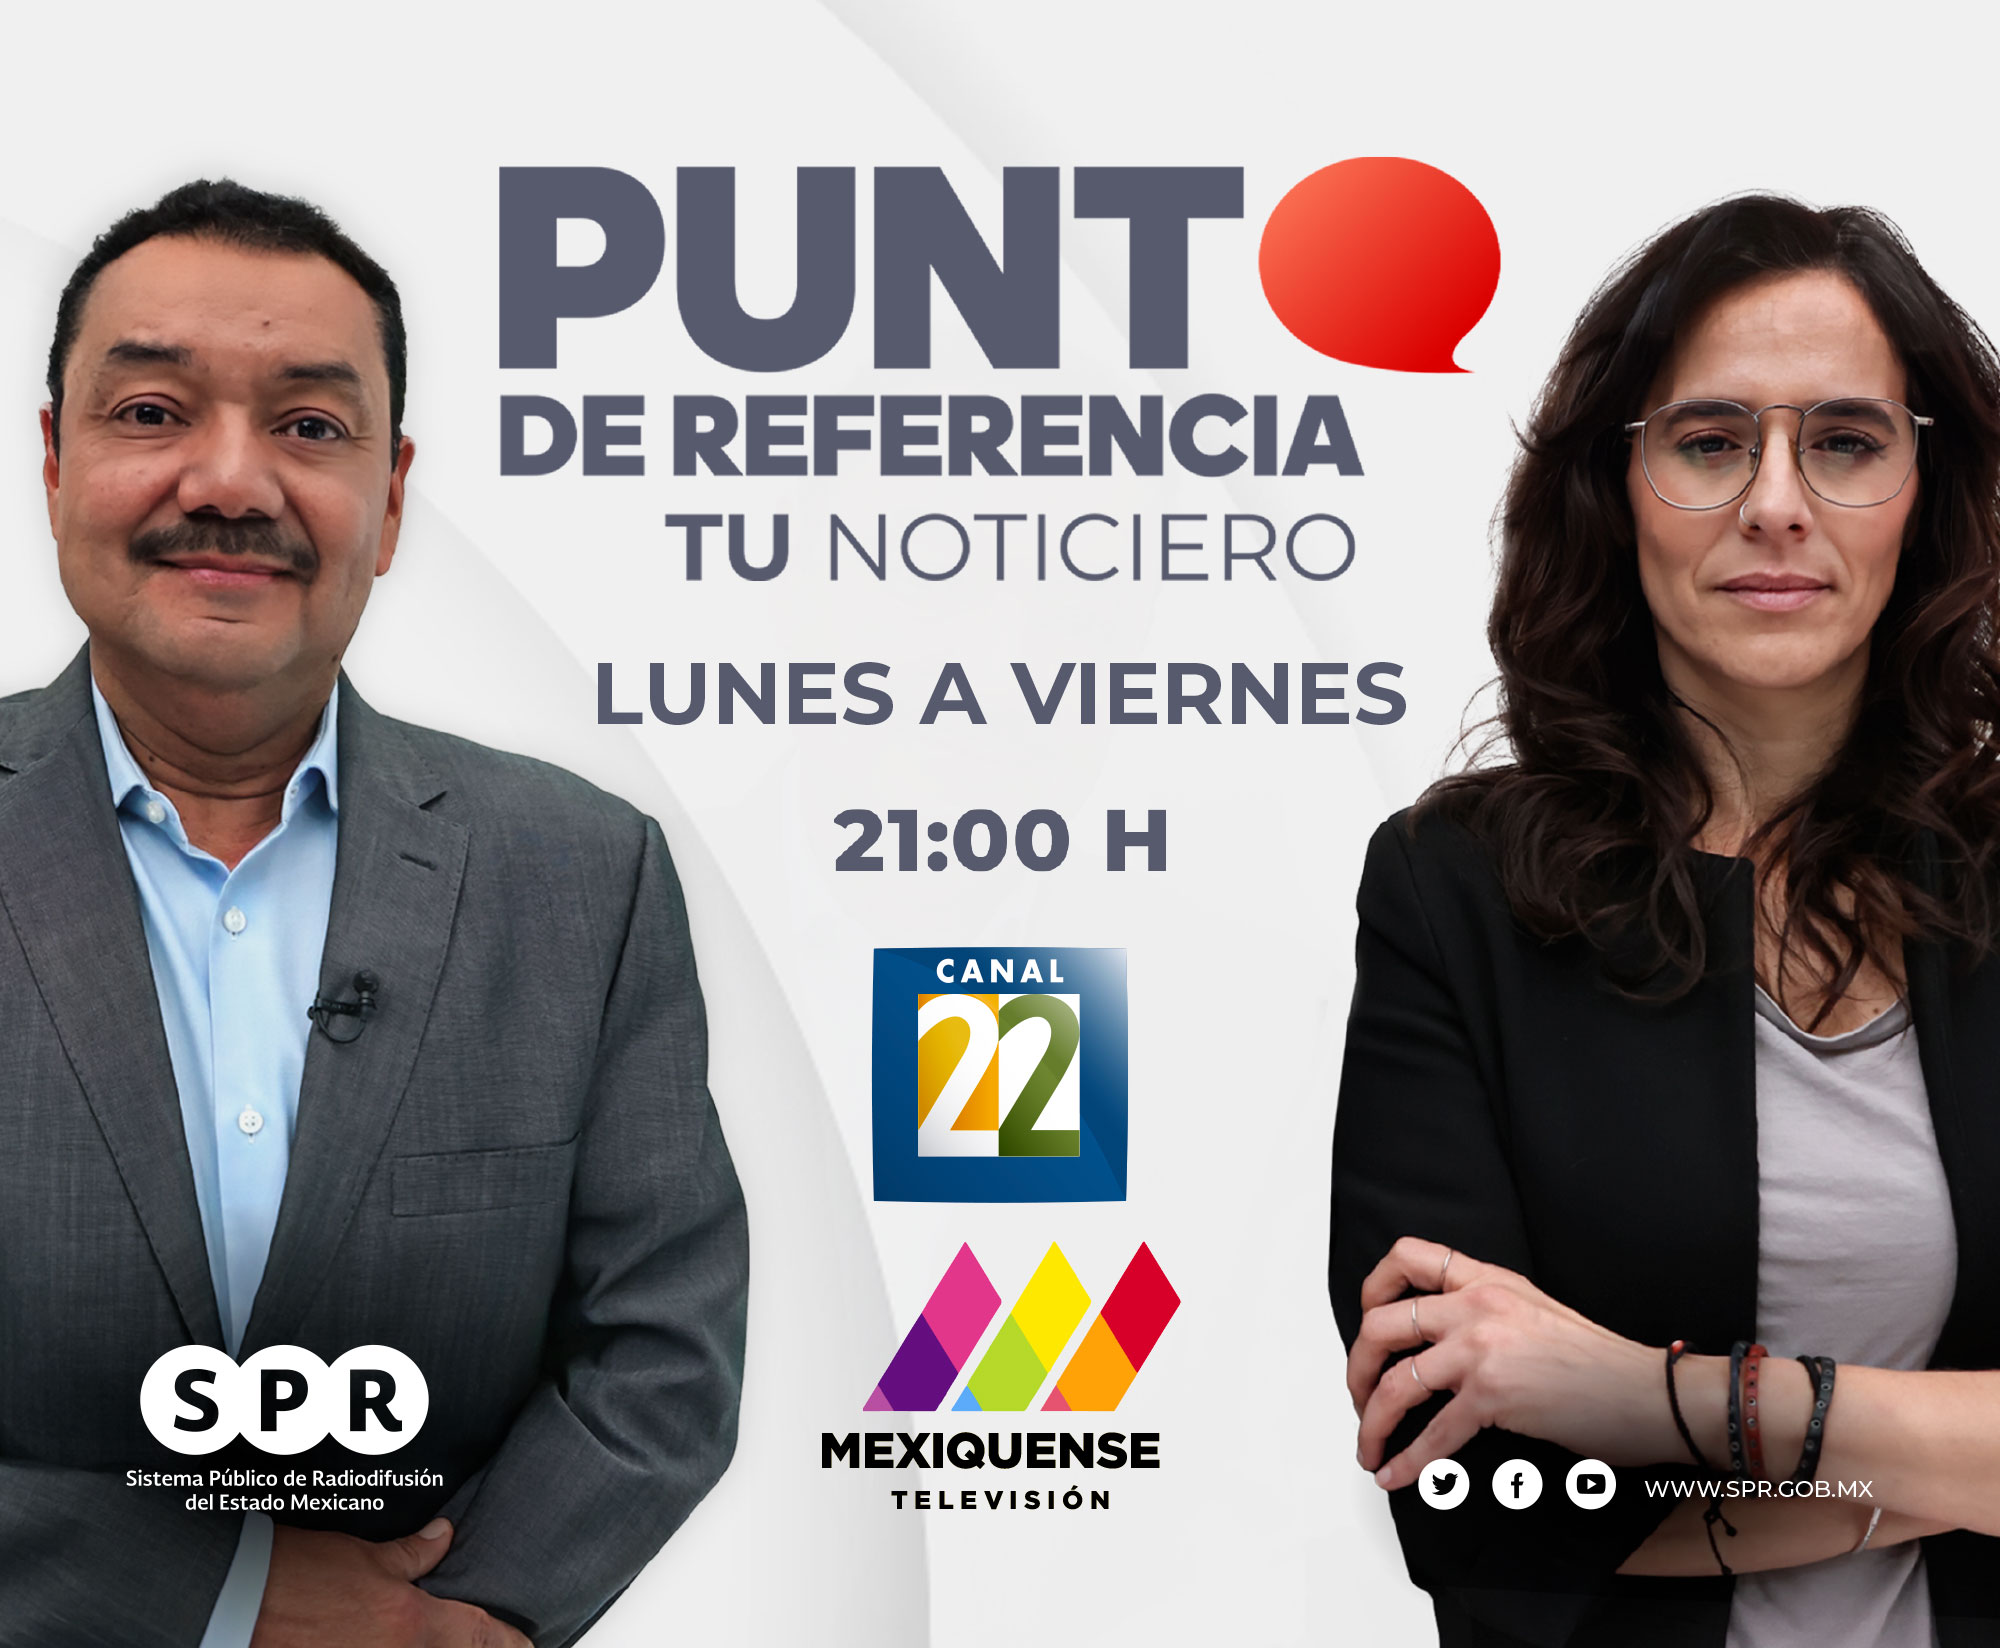 Transmiten Canal 22 y TV Mexiquense “Punto de Referencia”, el noticiero estelar de los medios públicos